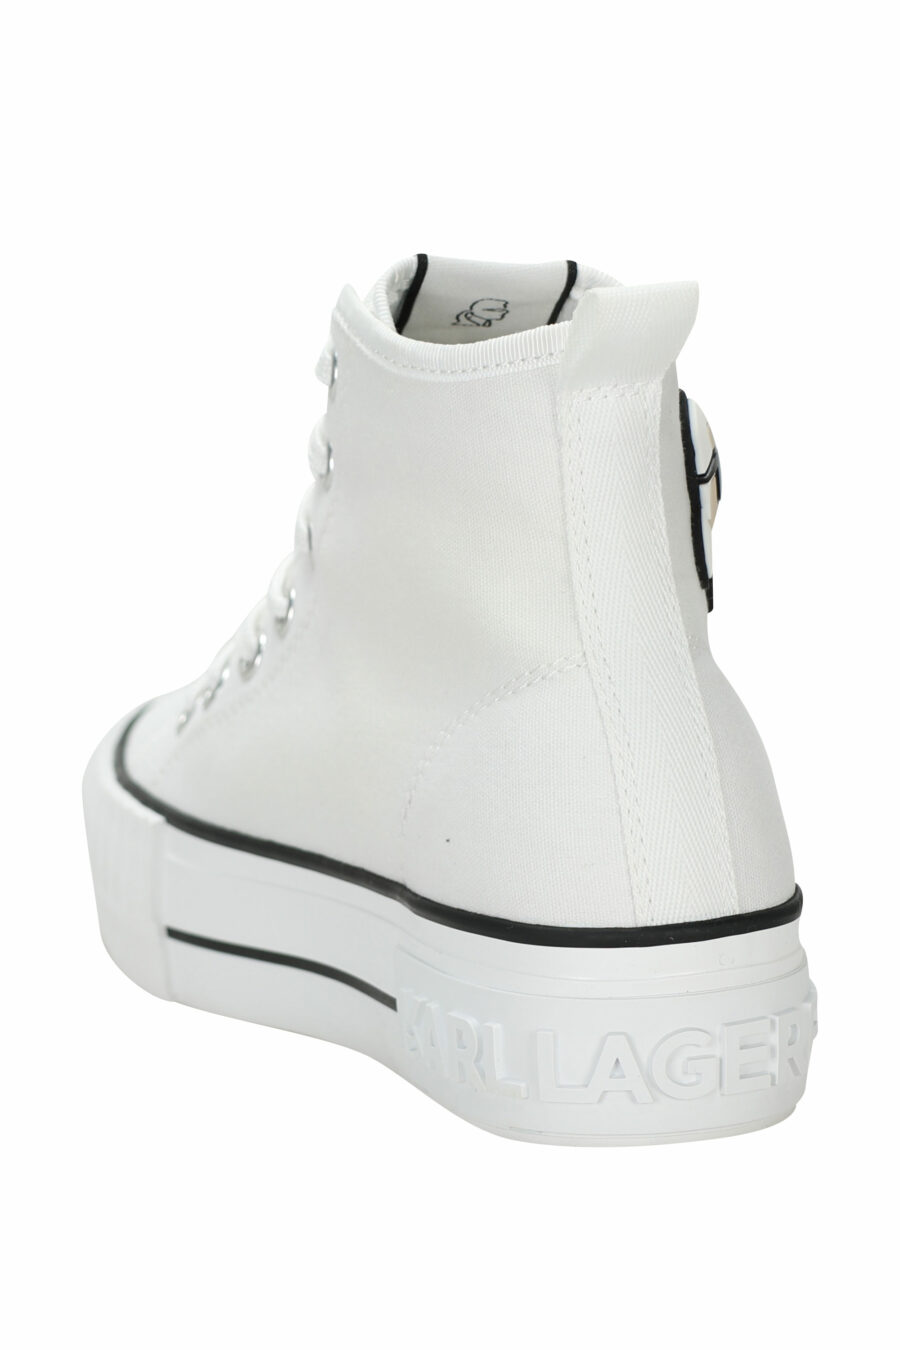 Weiße High-Top-Turnschuhe im Converse-Stil mit Mini-Logo aus Gummi "karl" - 5059529384837 3